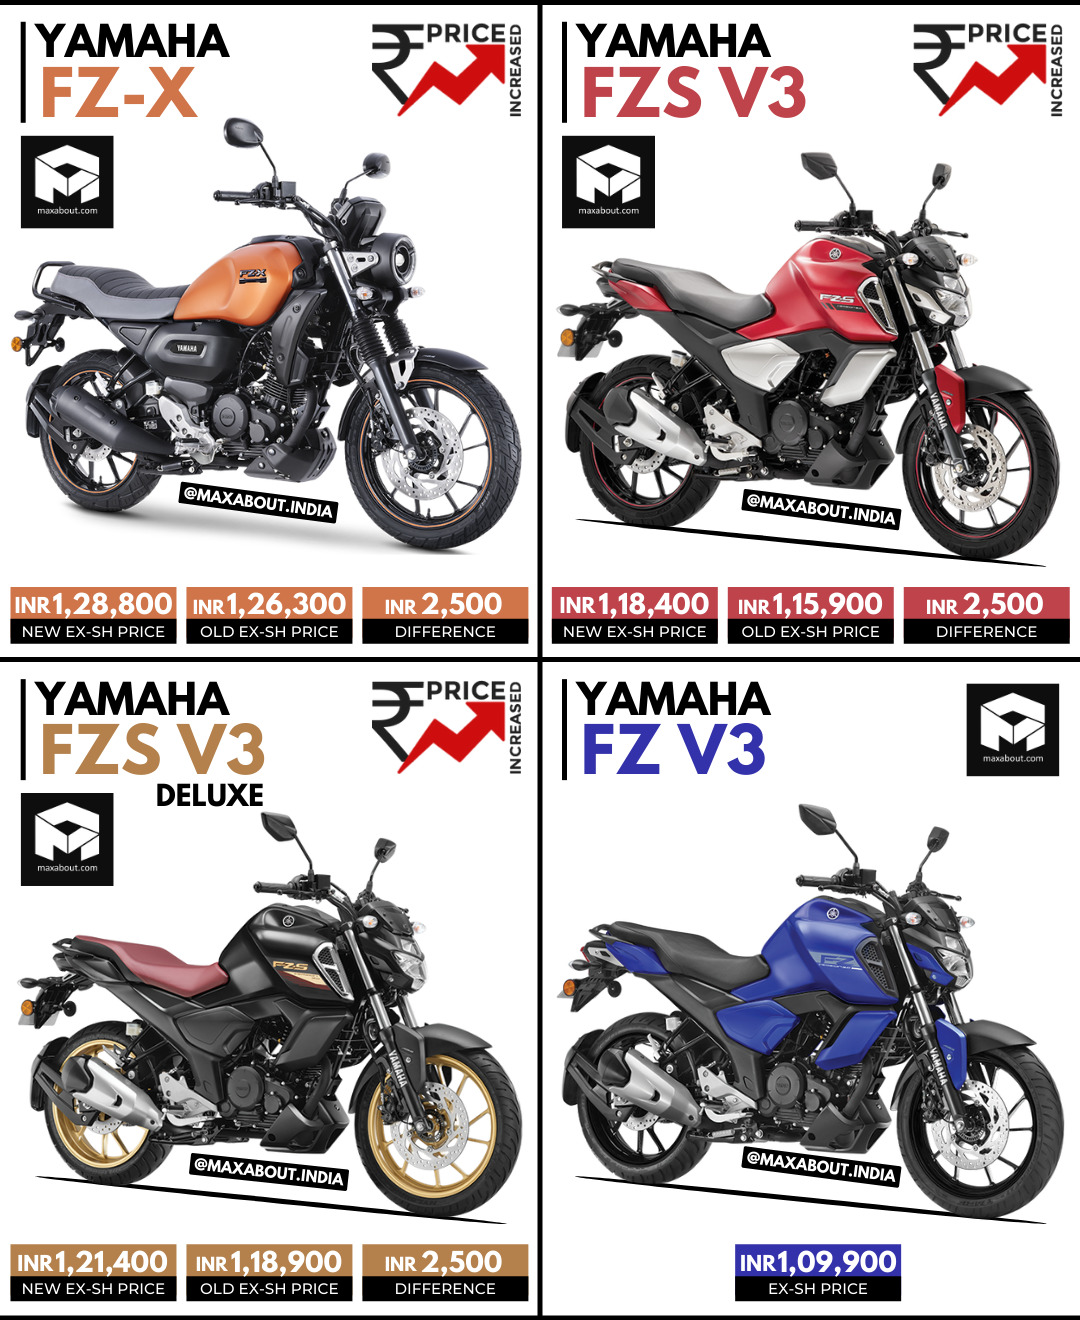 Yamaha FZ-X, FZS V3, FZS V3 Deluxe Price Increased; No Price Hike For FZ V3